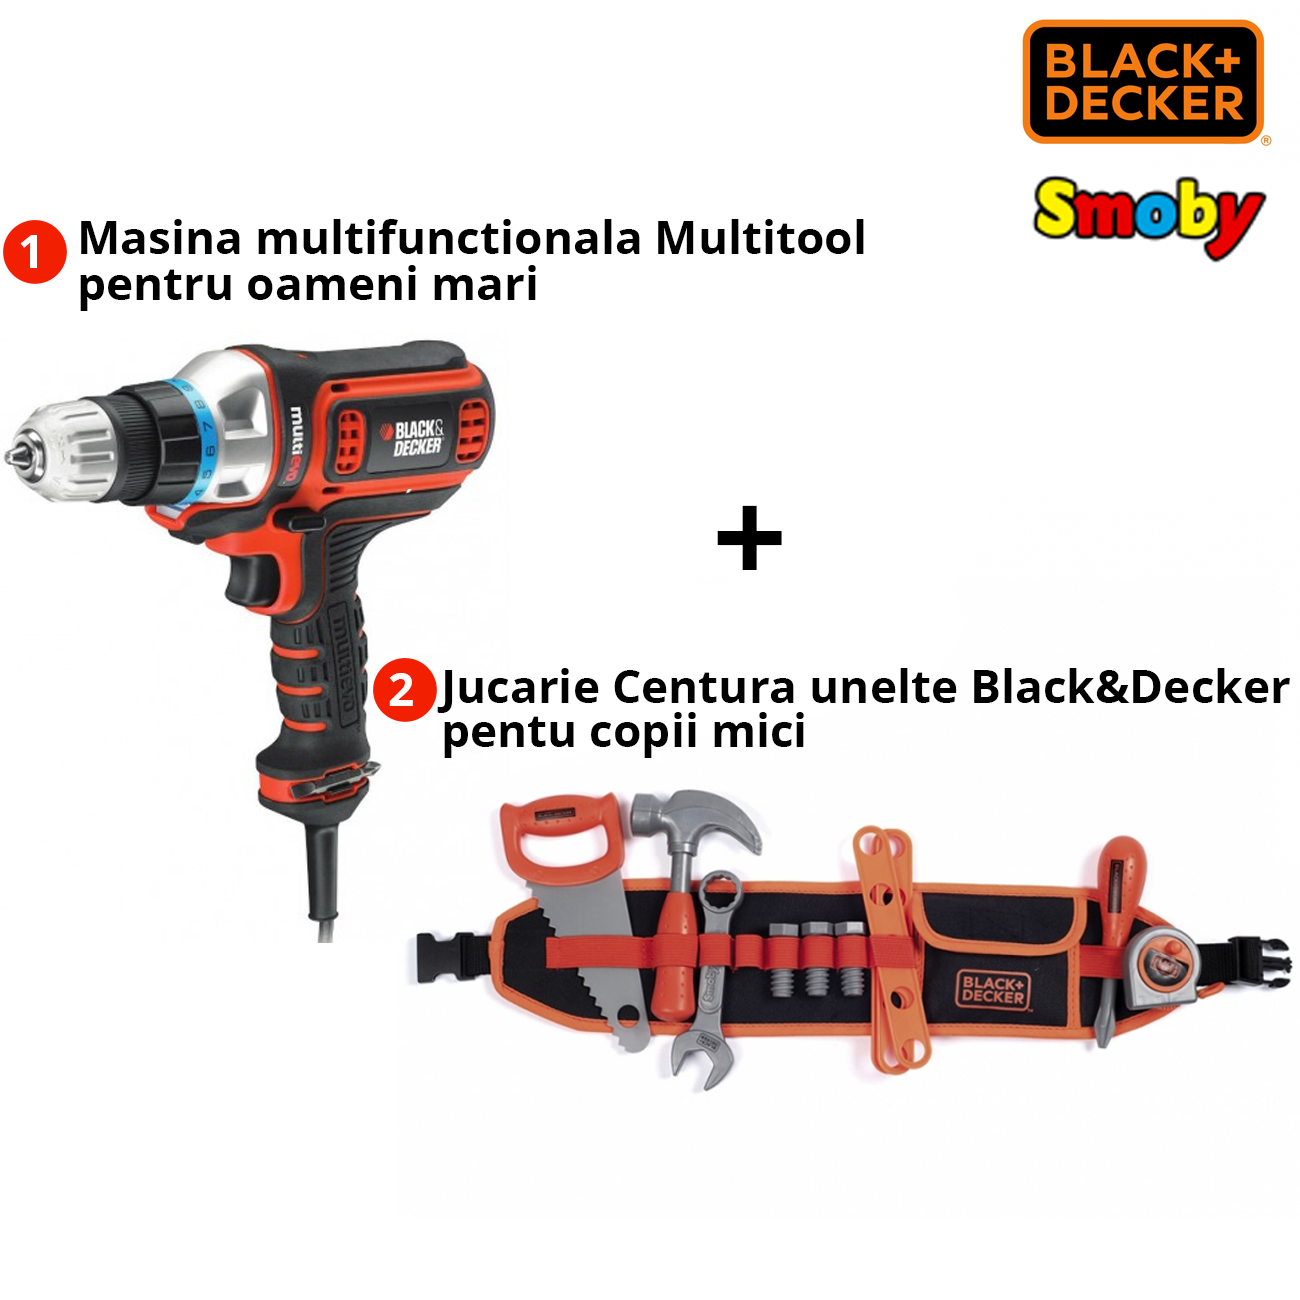 Pachet Black+Decker Masina Multitool MT350K + Jucarie Smoby 7600360192 7600360192